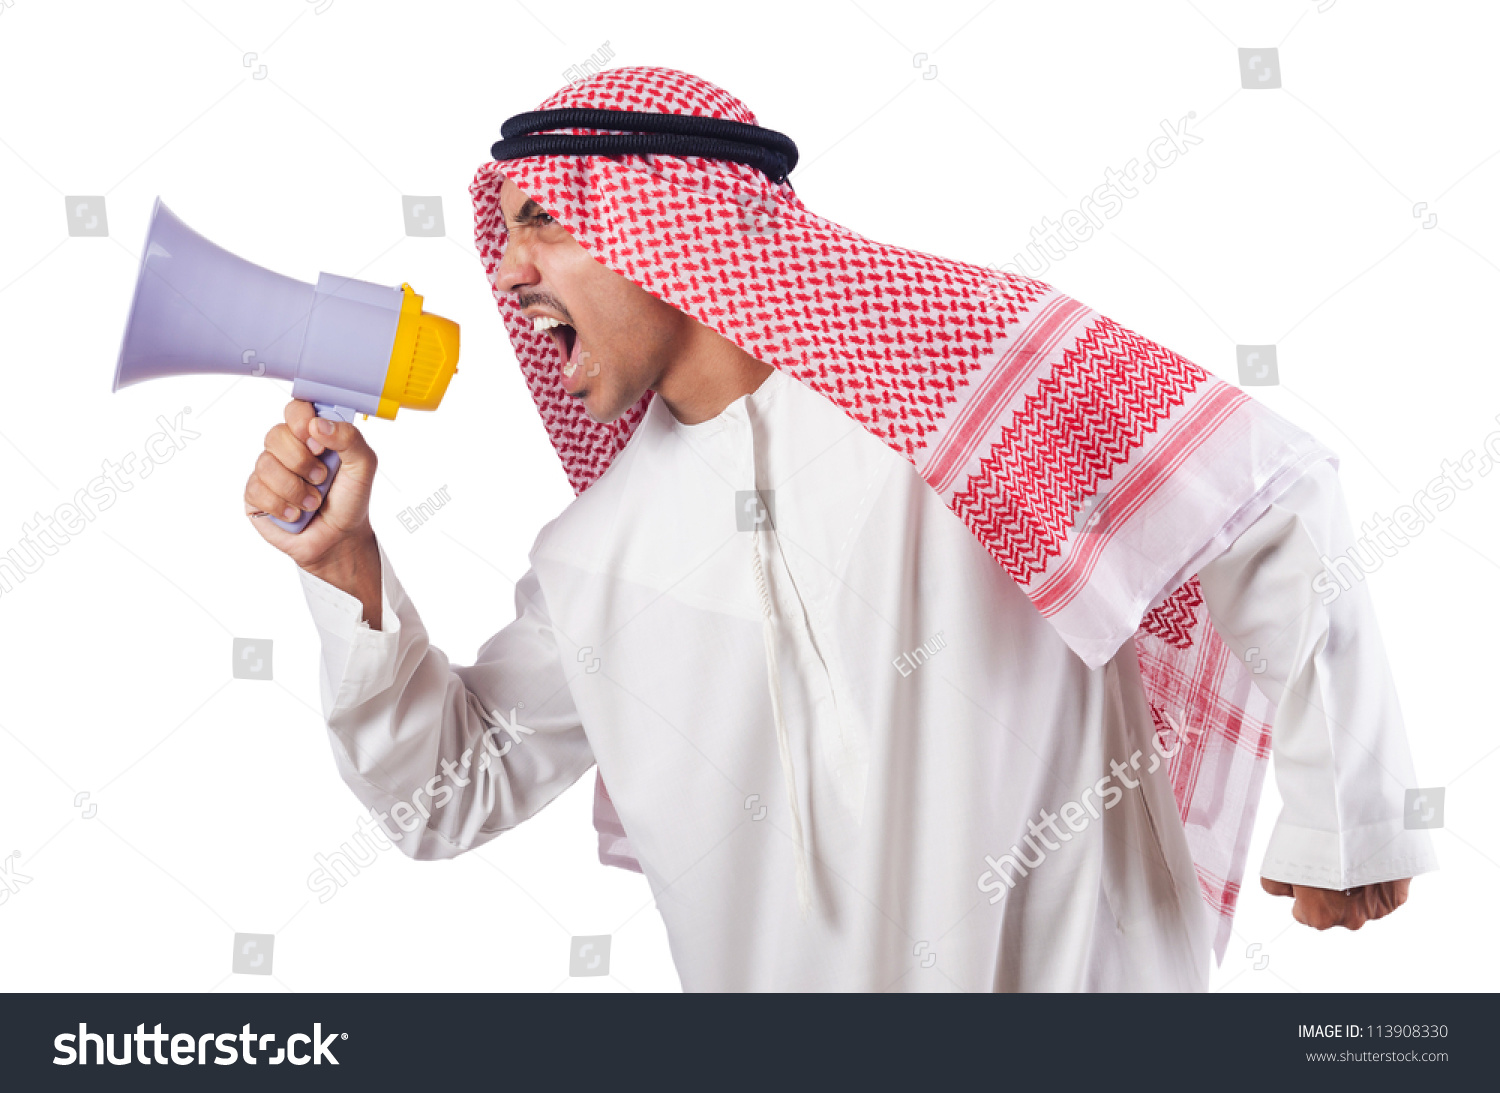 Arab man shouting through loudspeaker #113908330